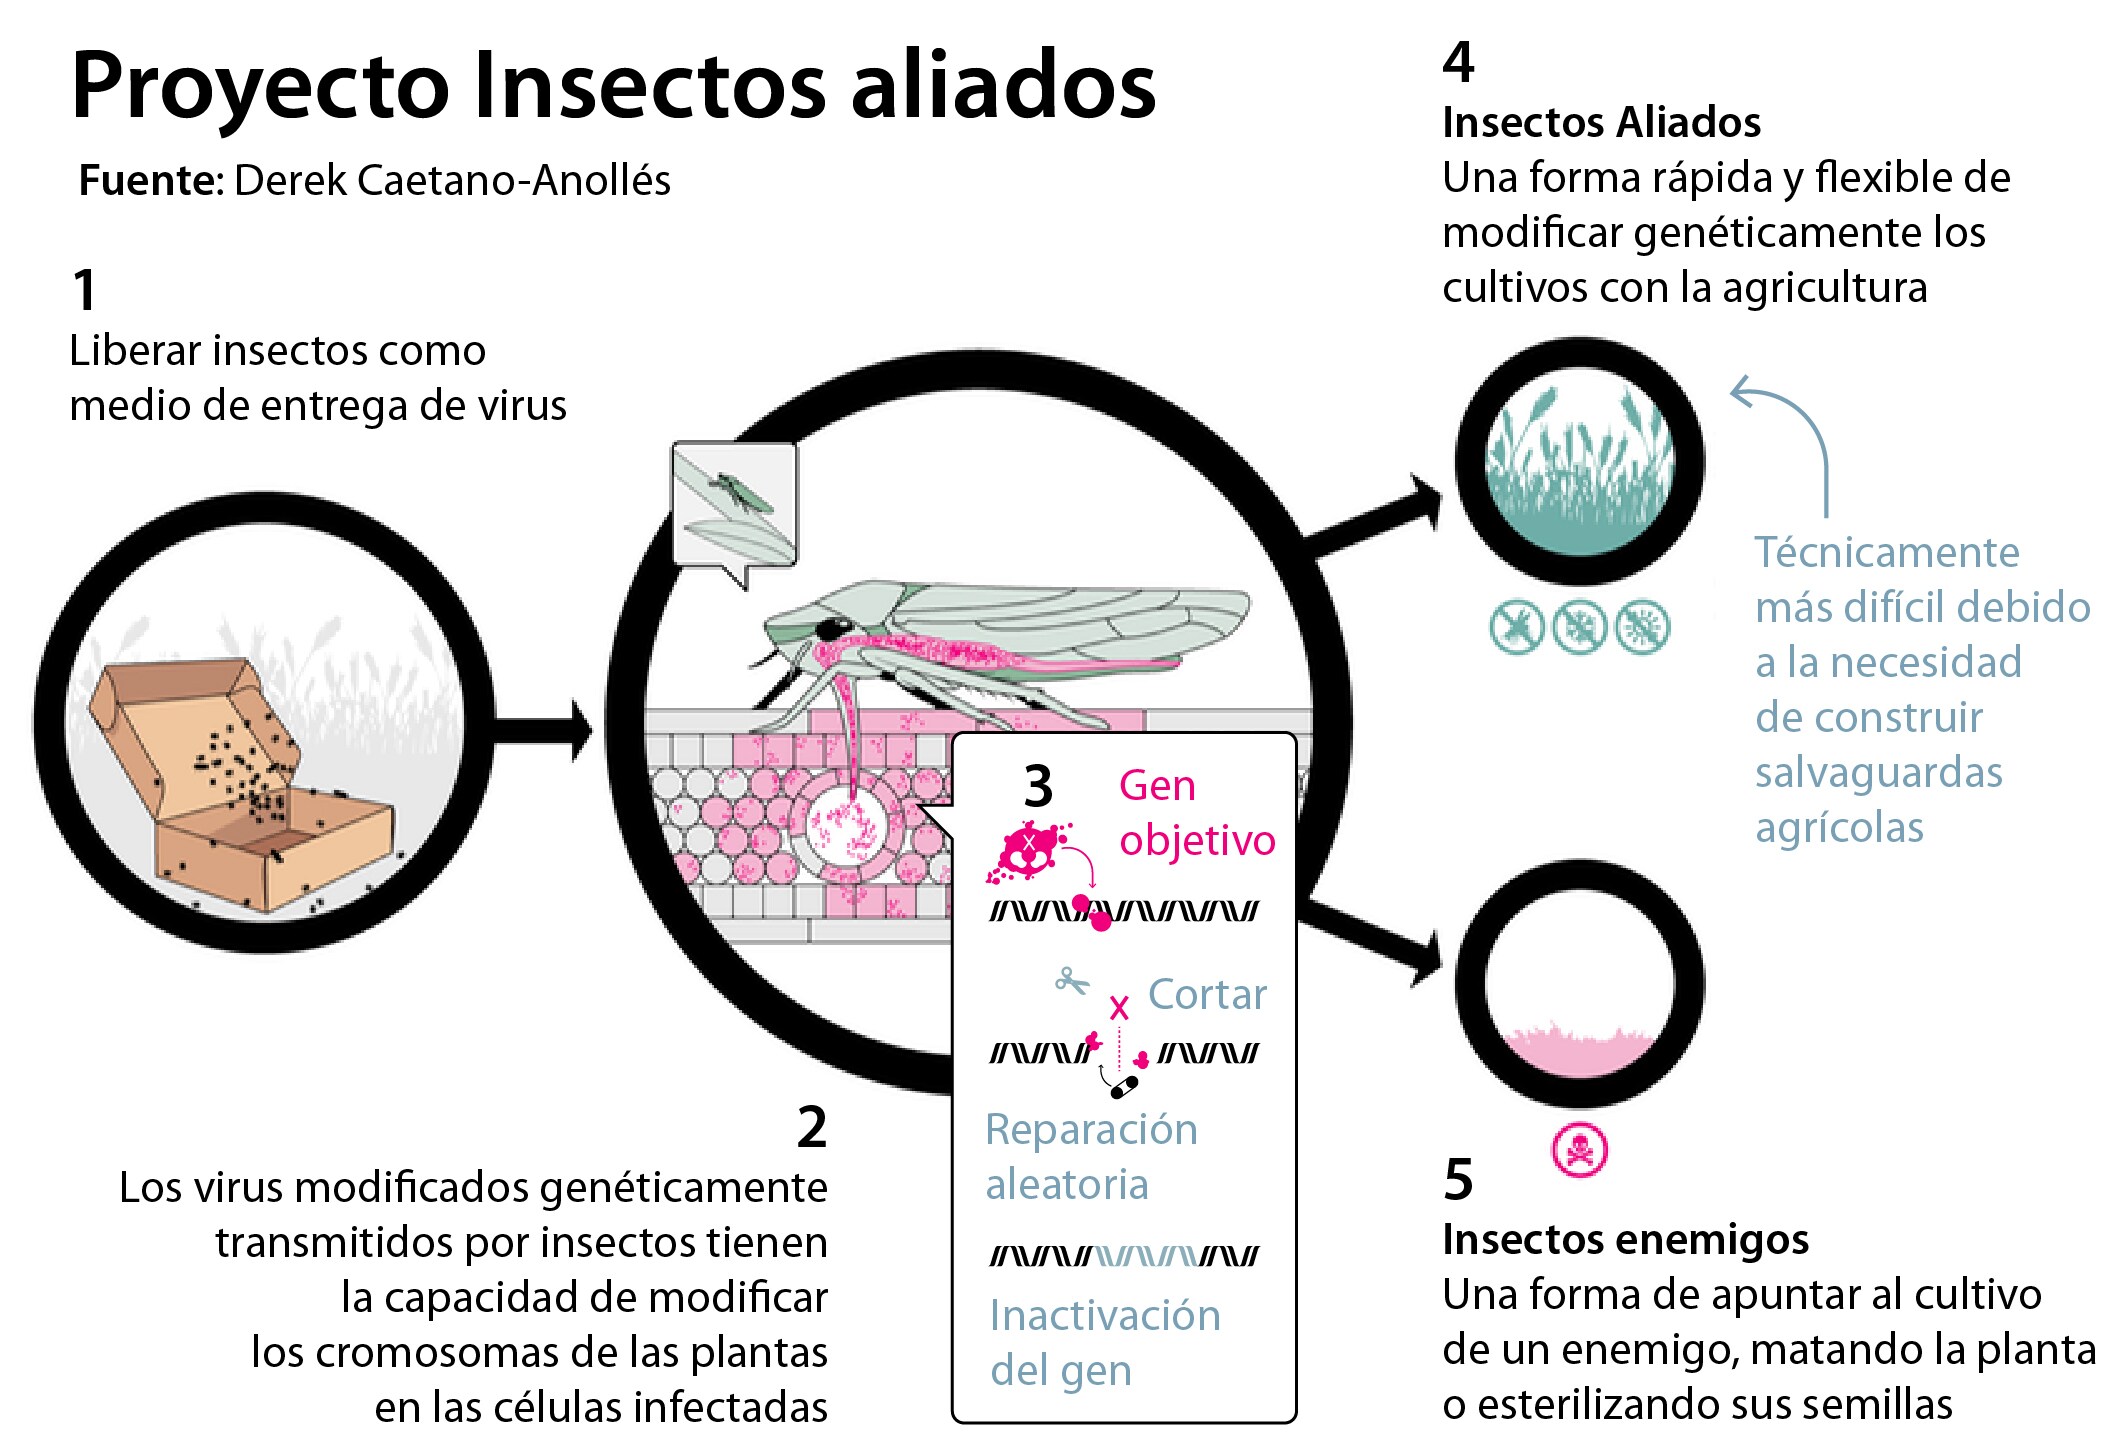 Así es cómo funciona «Insectos Aliados», según los autores del artículo